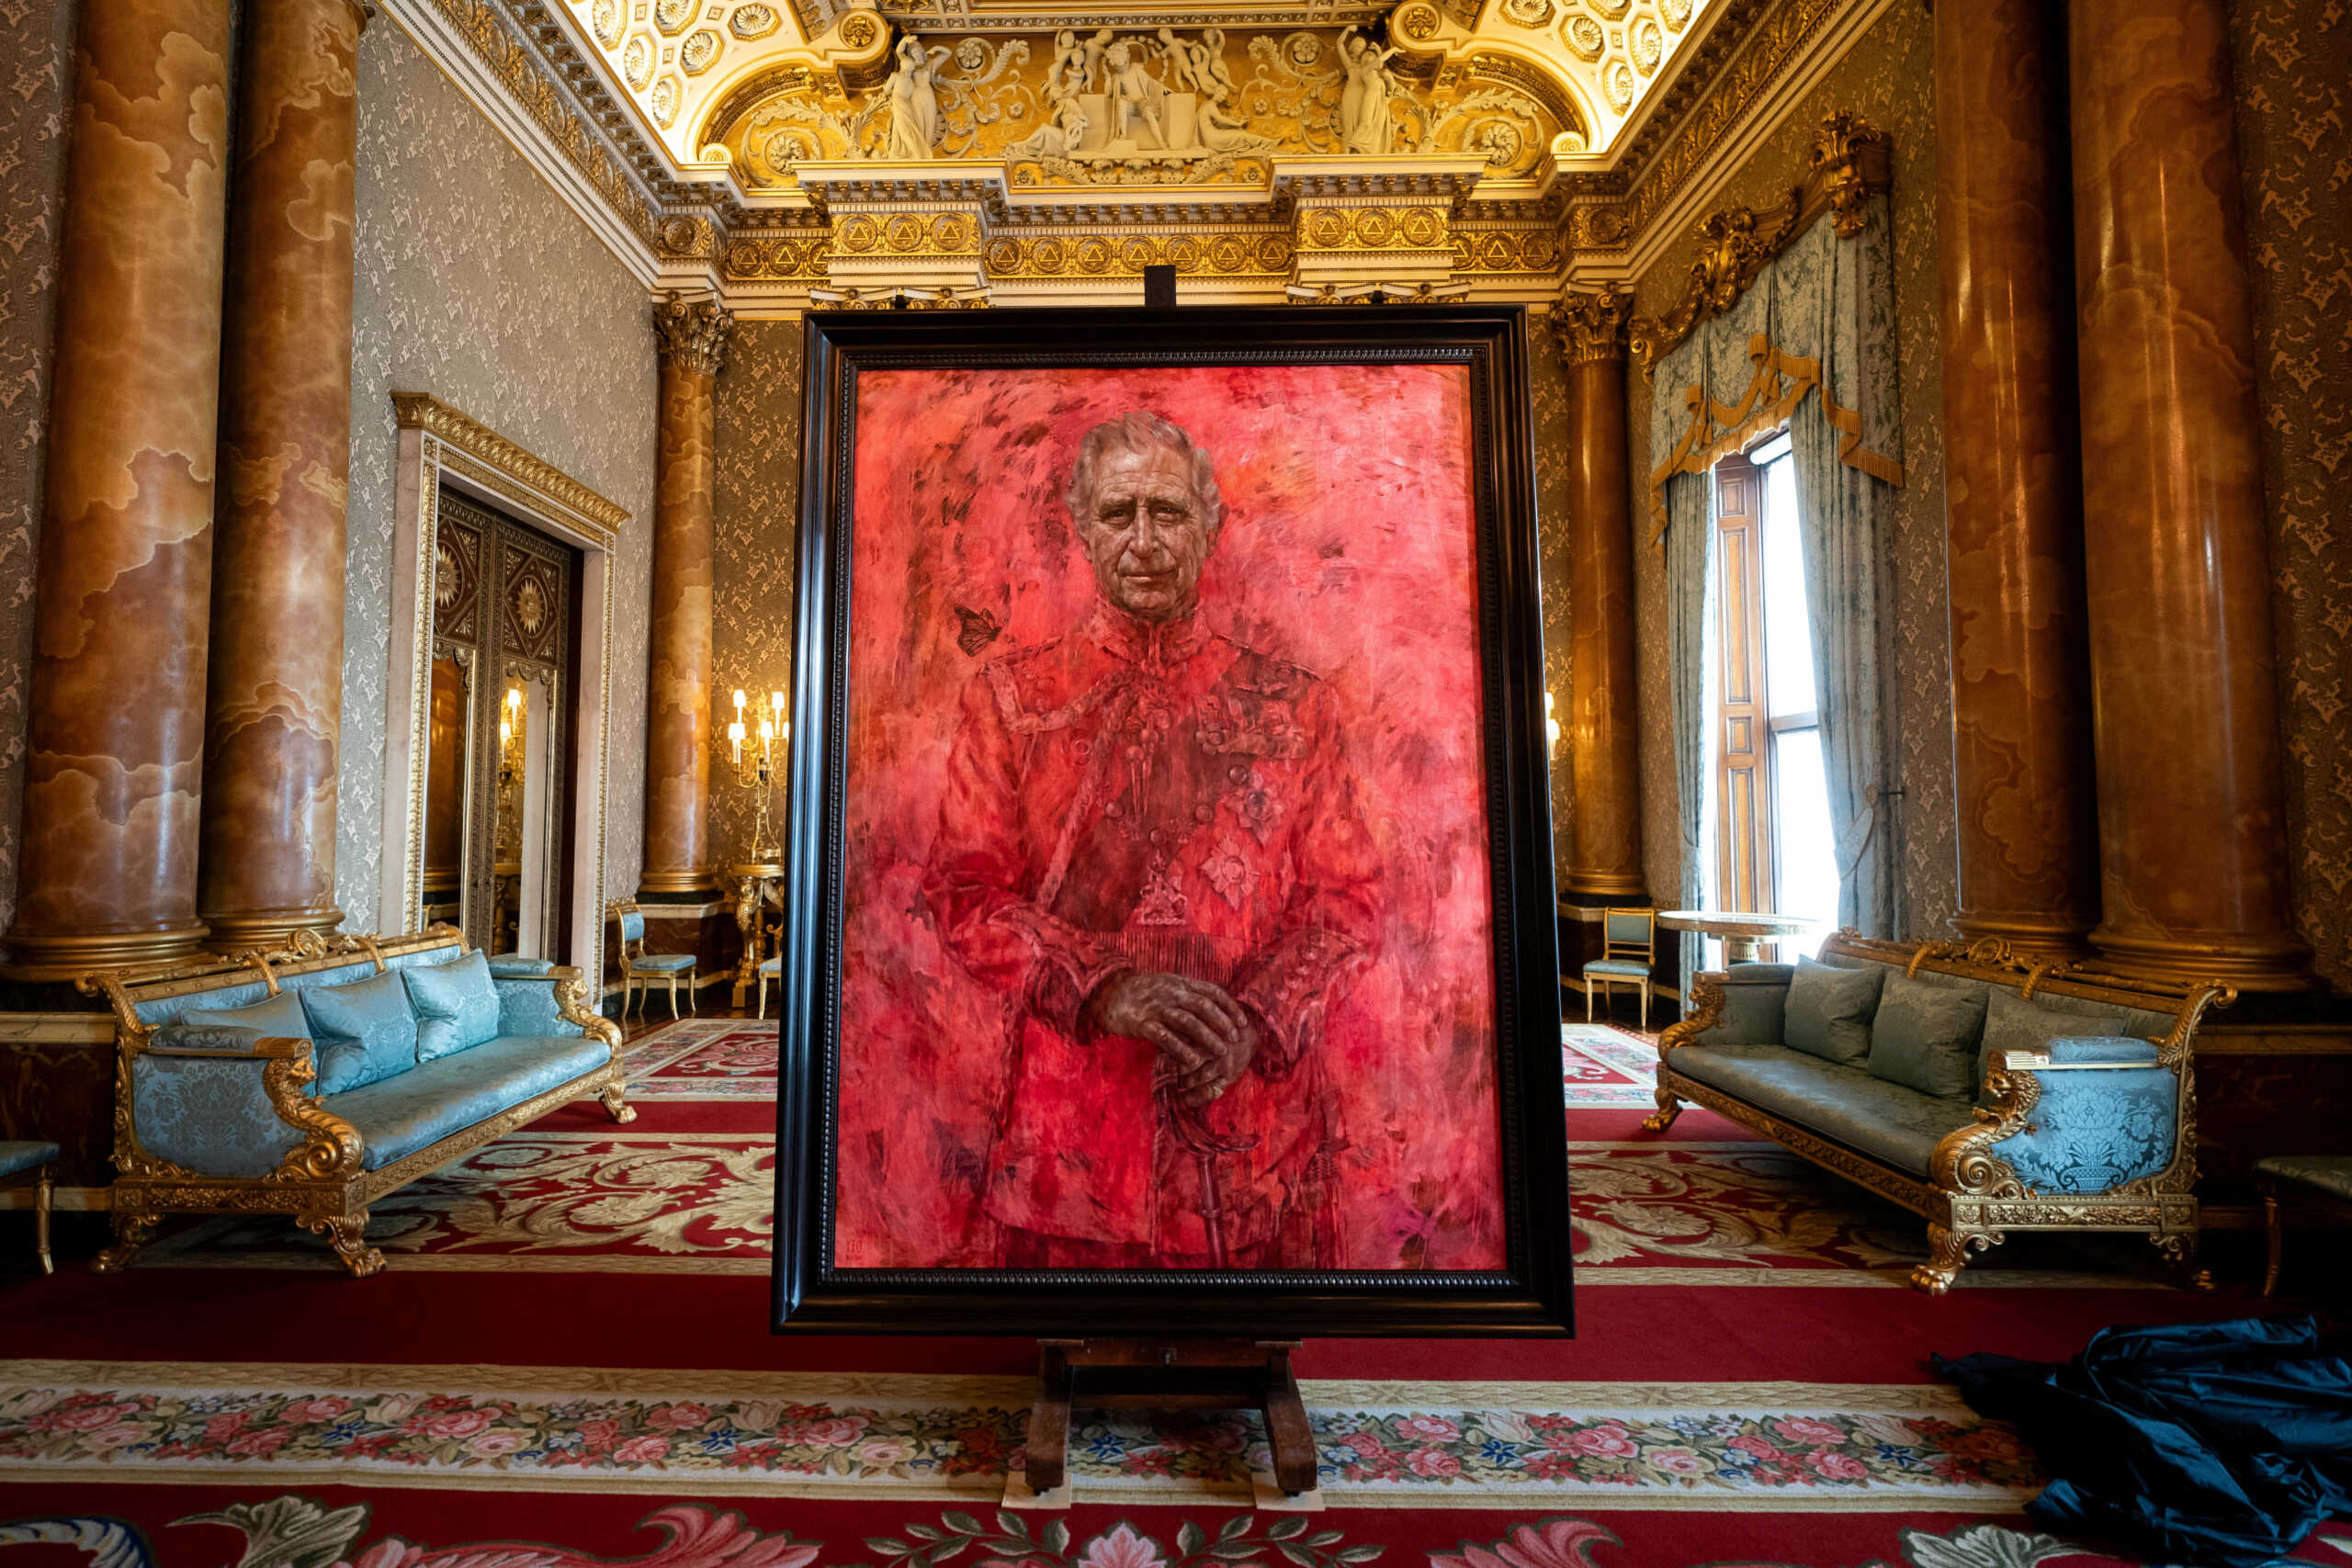 Βασιλιάς Κάρολος: Tο κατακόκκινο πορτραίτο «άναψε φωτιές» – «Μοιάζει σαν να είναι στην κόλαση»